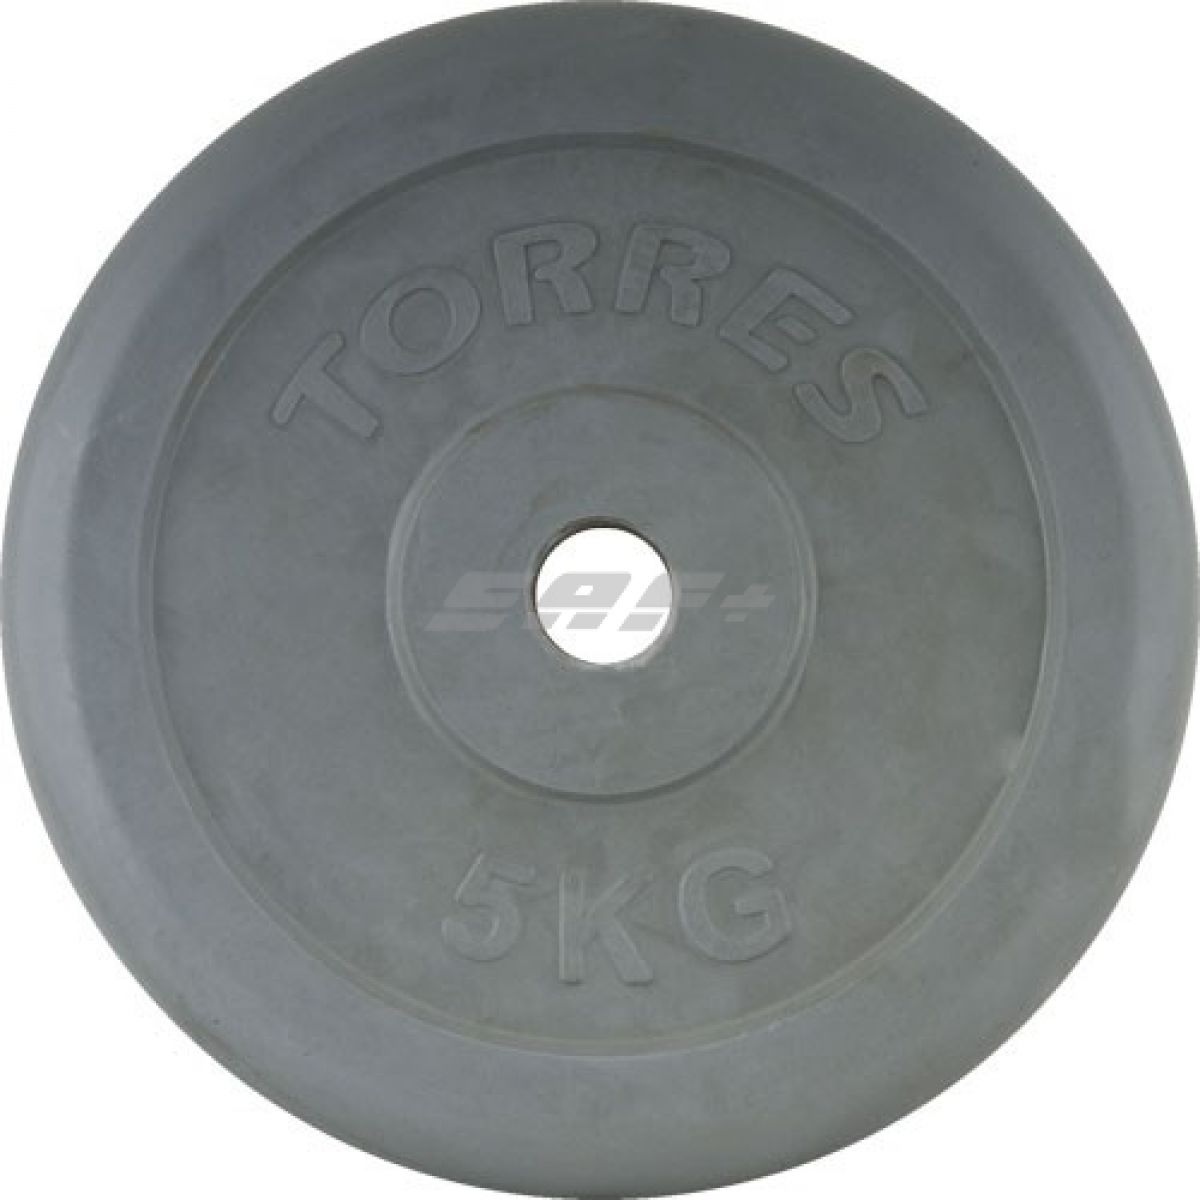  TORRES Диск обрезиненный 5 кг